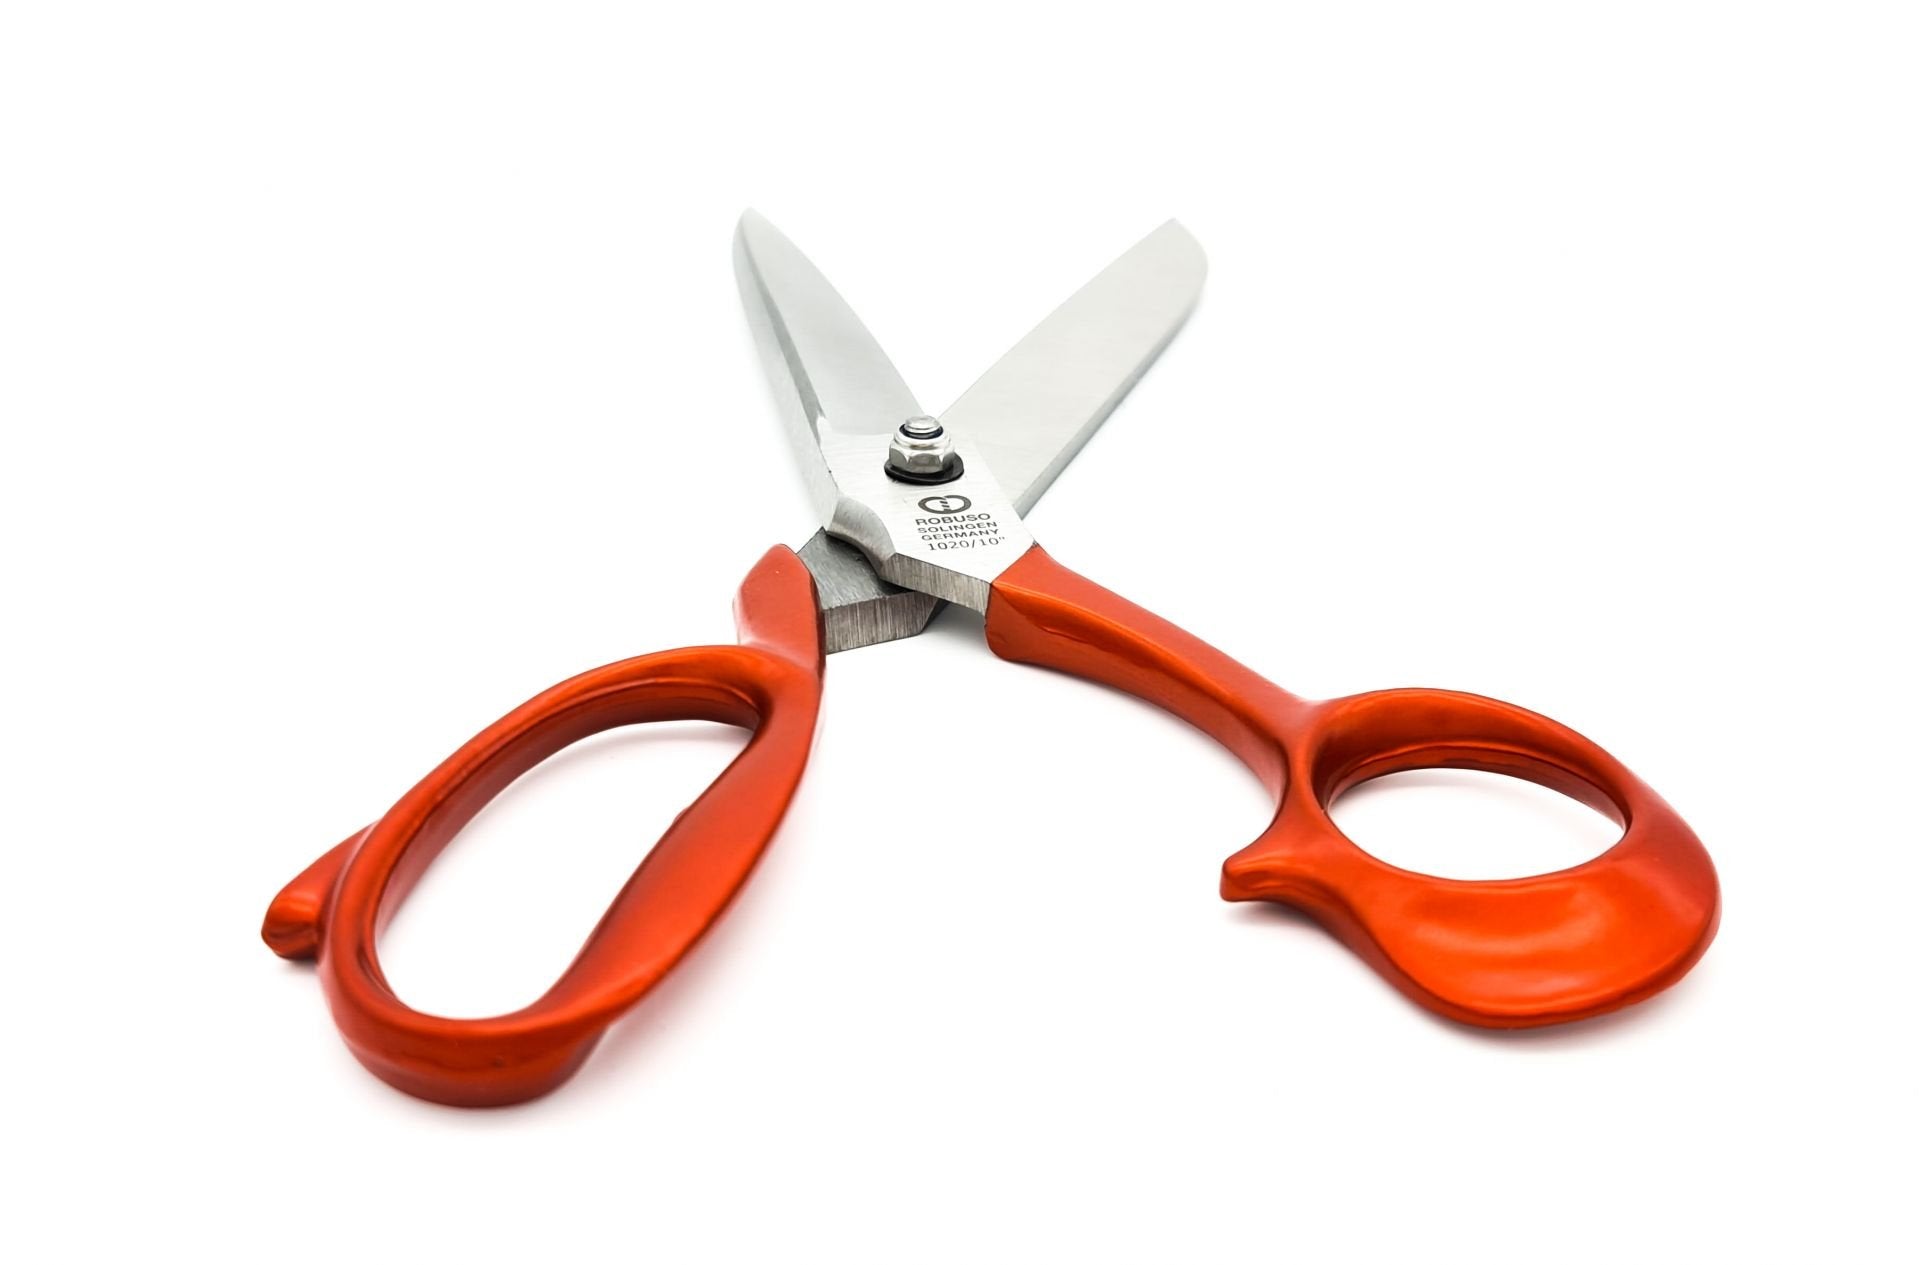 Tailor scissors, 10" / 26 cm